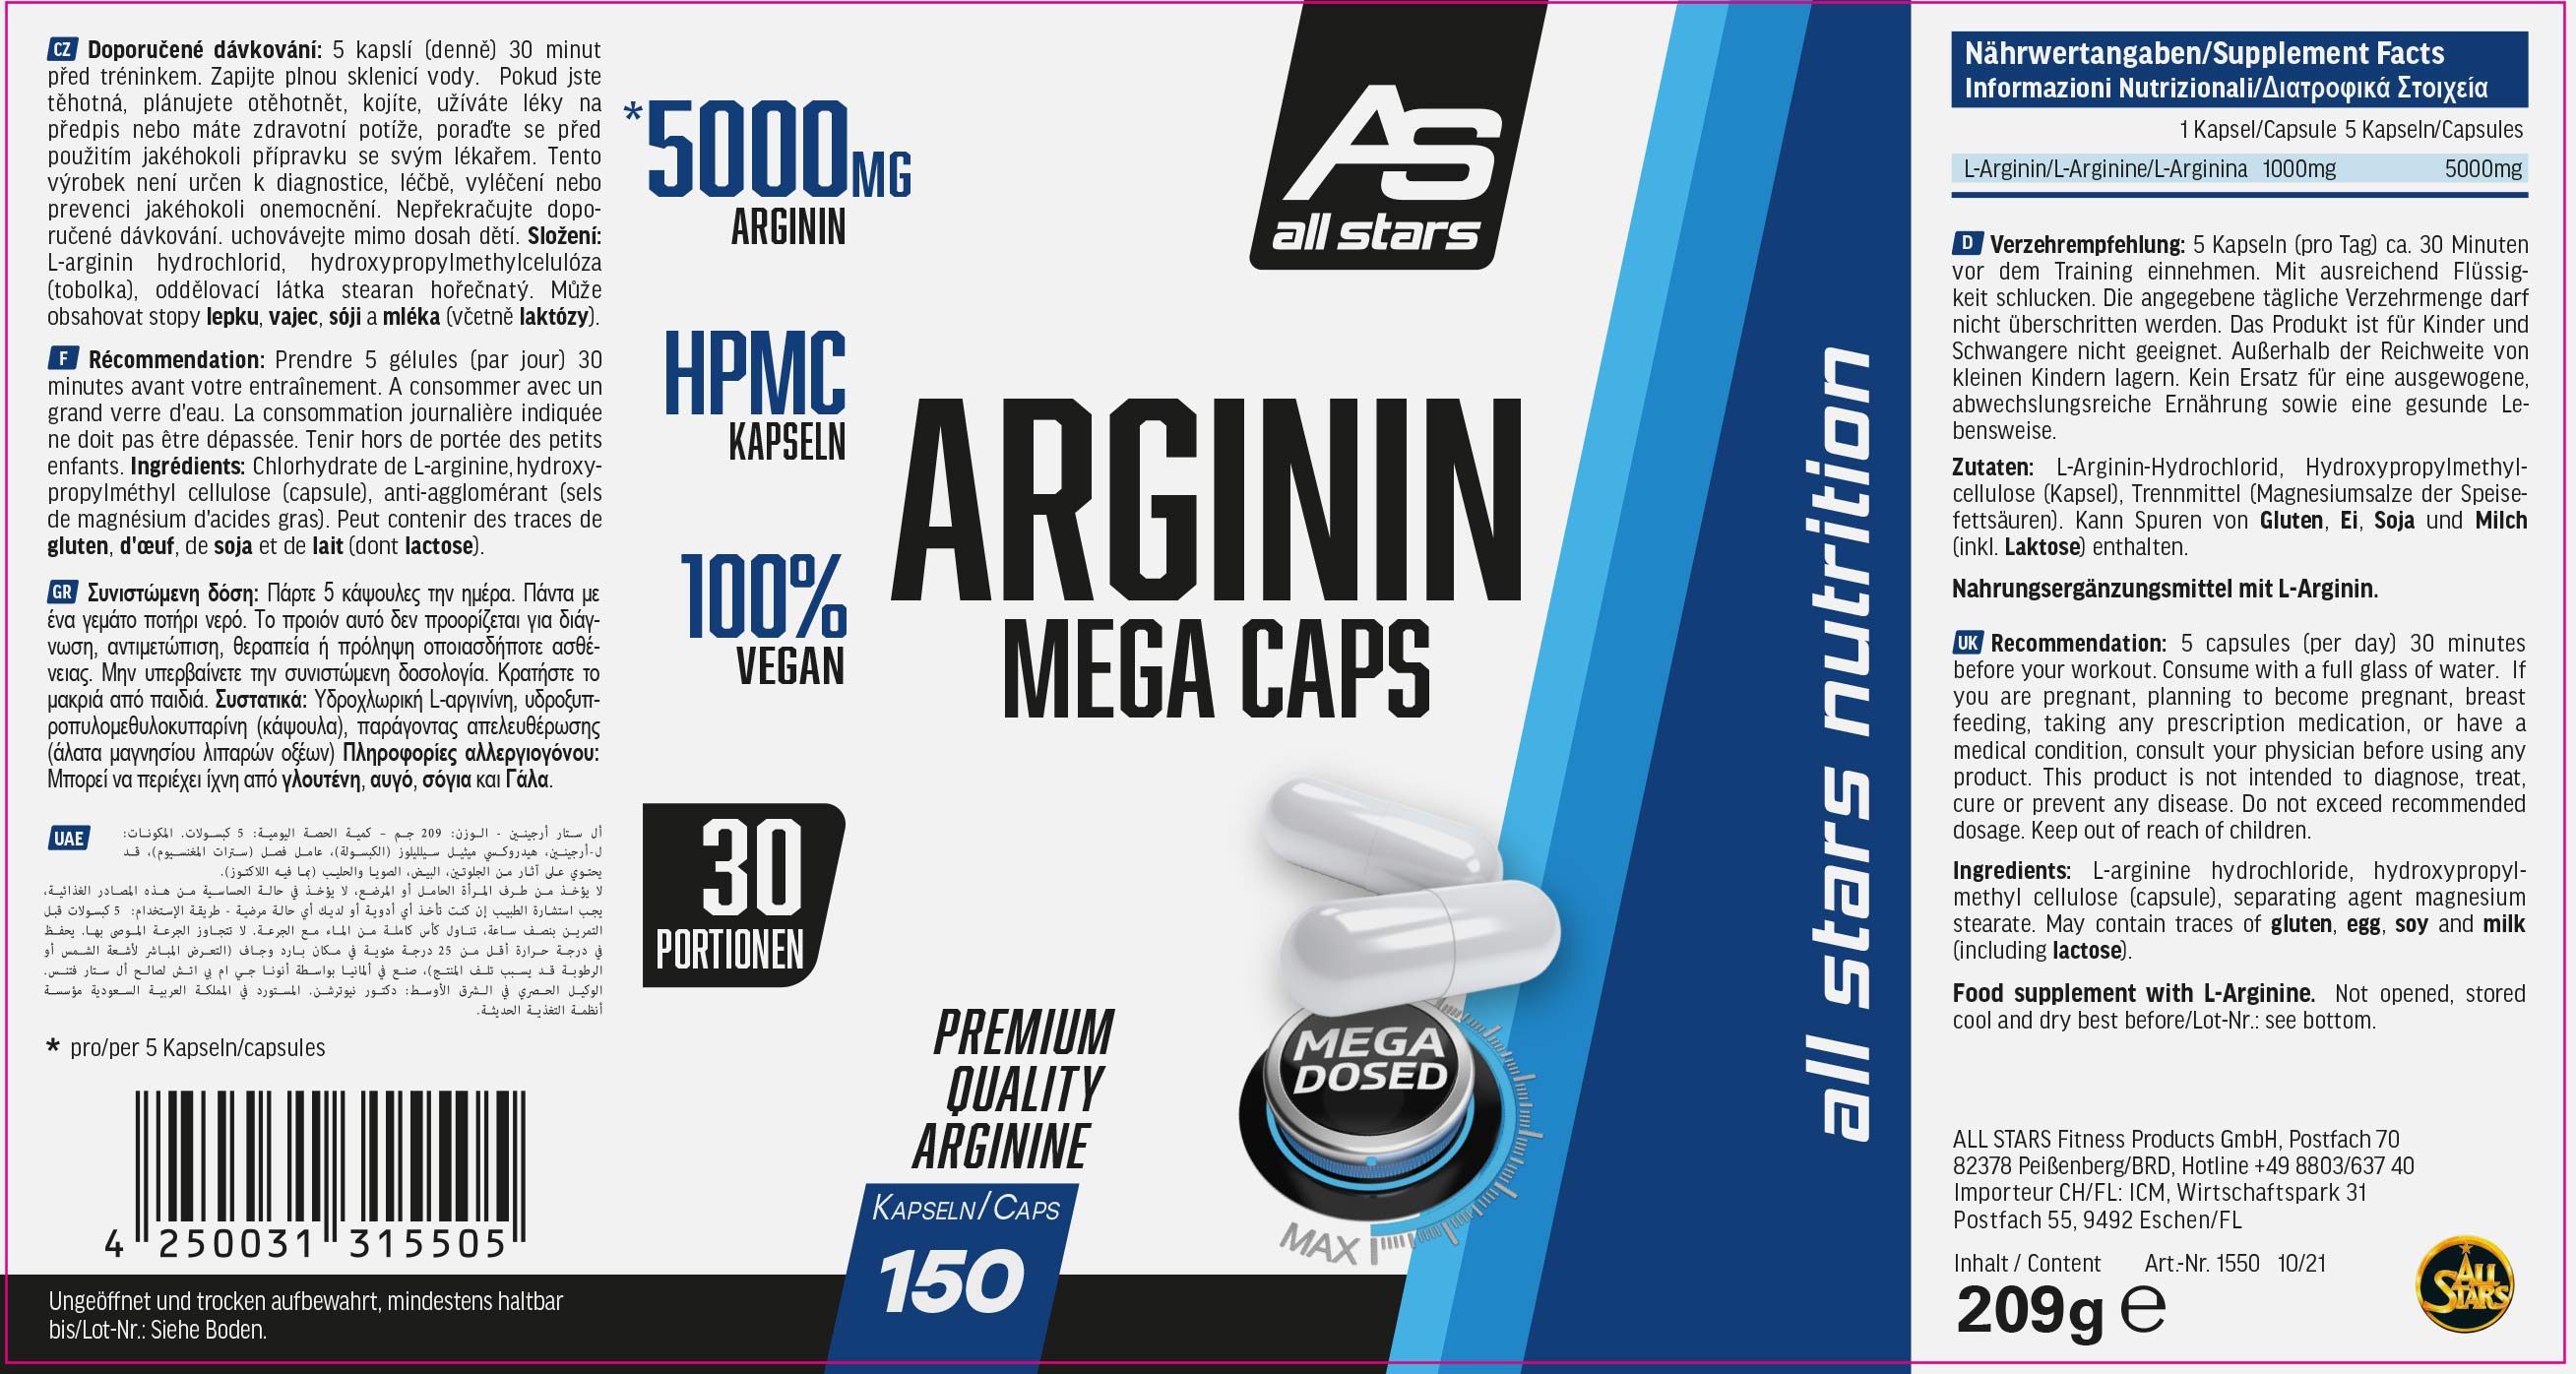 Arginin_Mega_Caps_150Kaps_220x117_102021_DRUCK.jpg